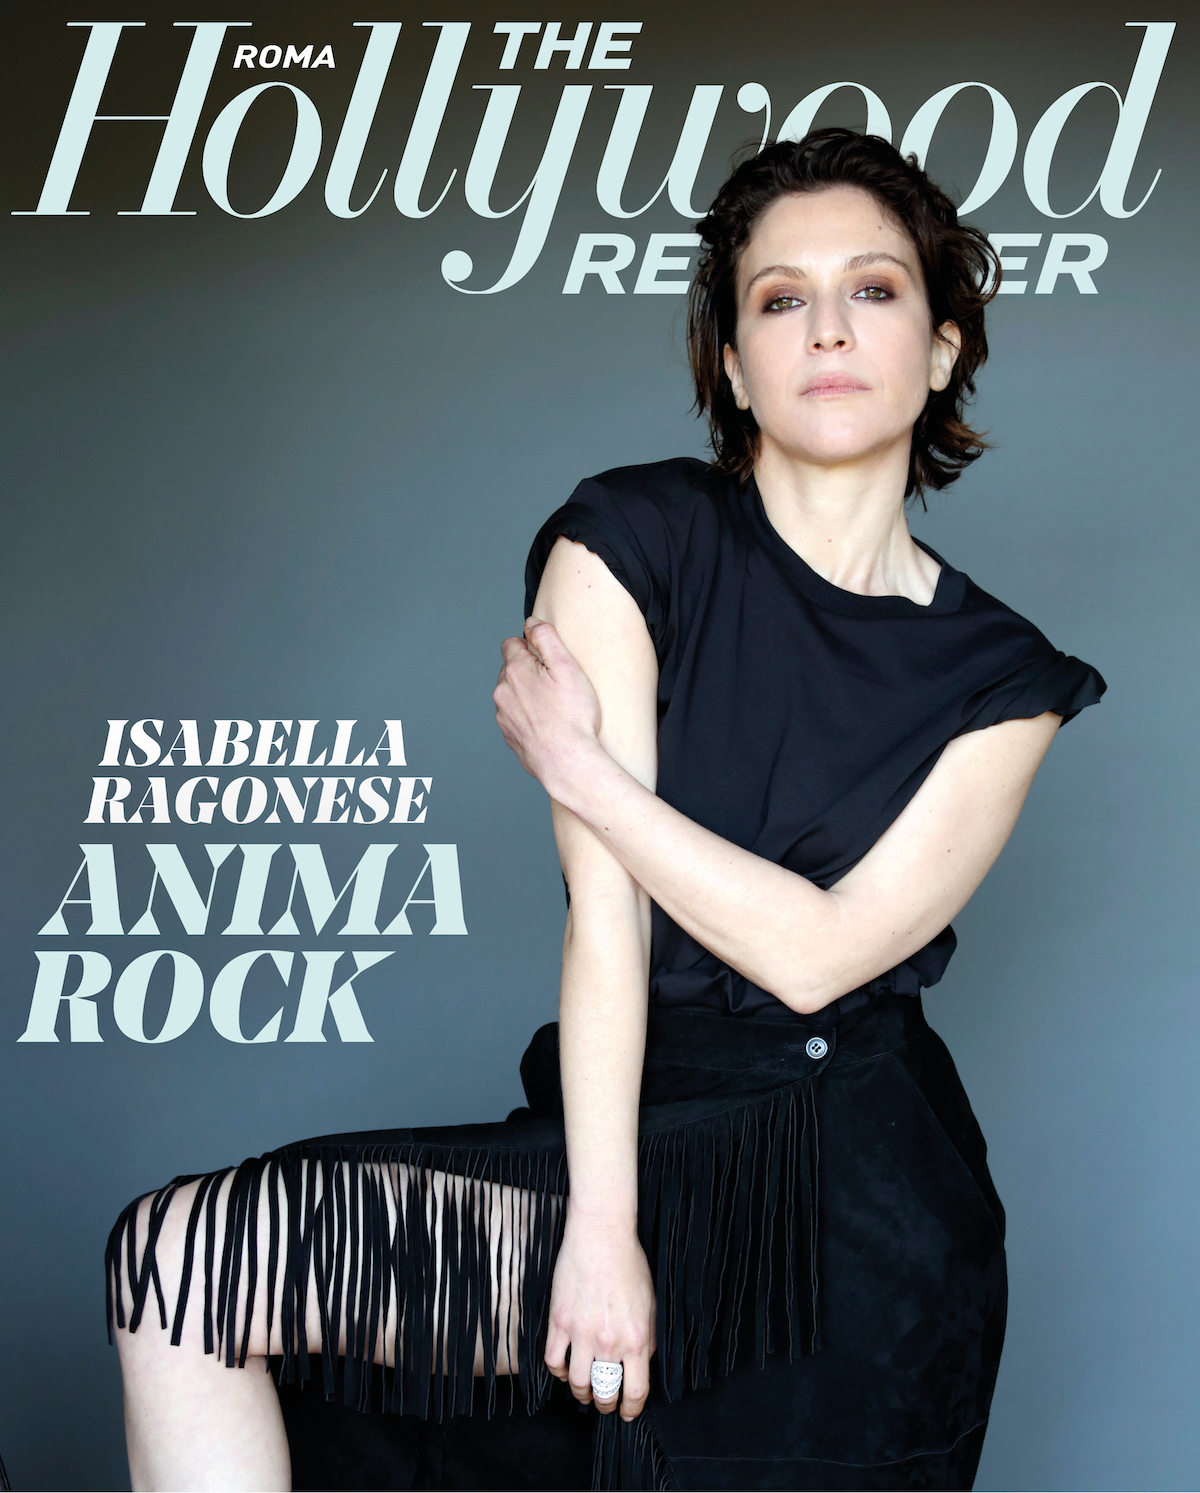 Isabella Ragonese protagonista della digital cover di THR Roma